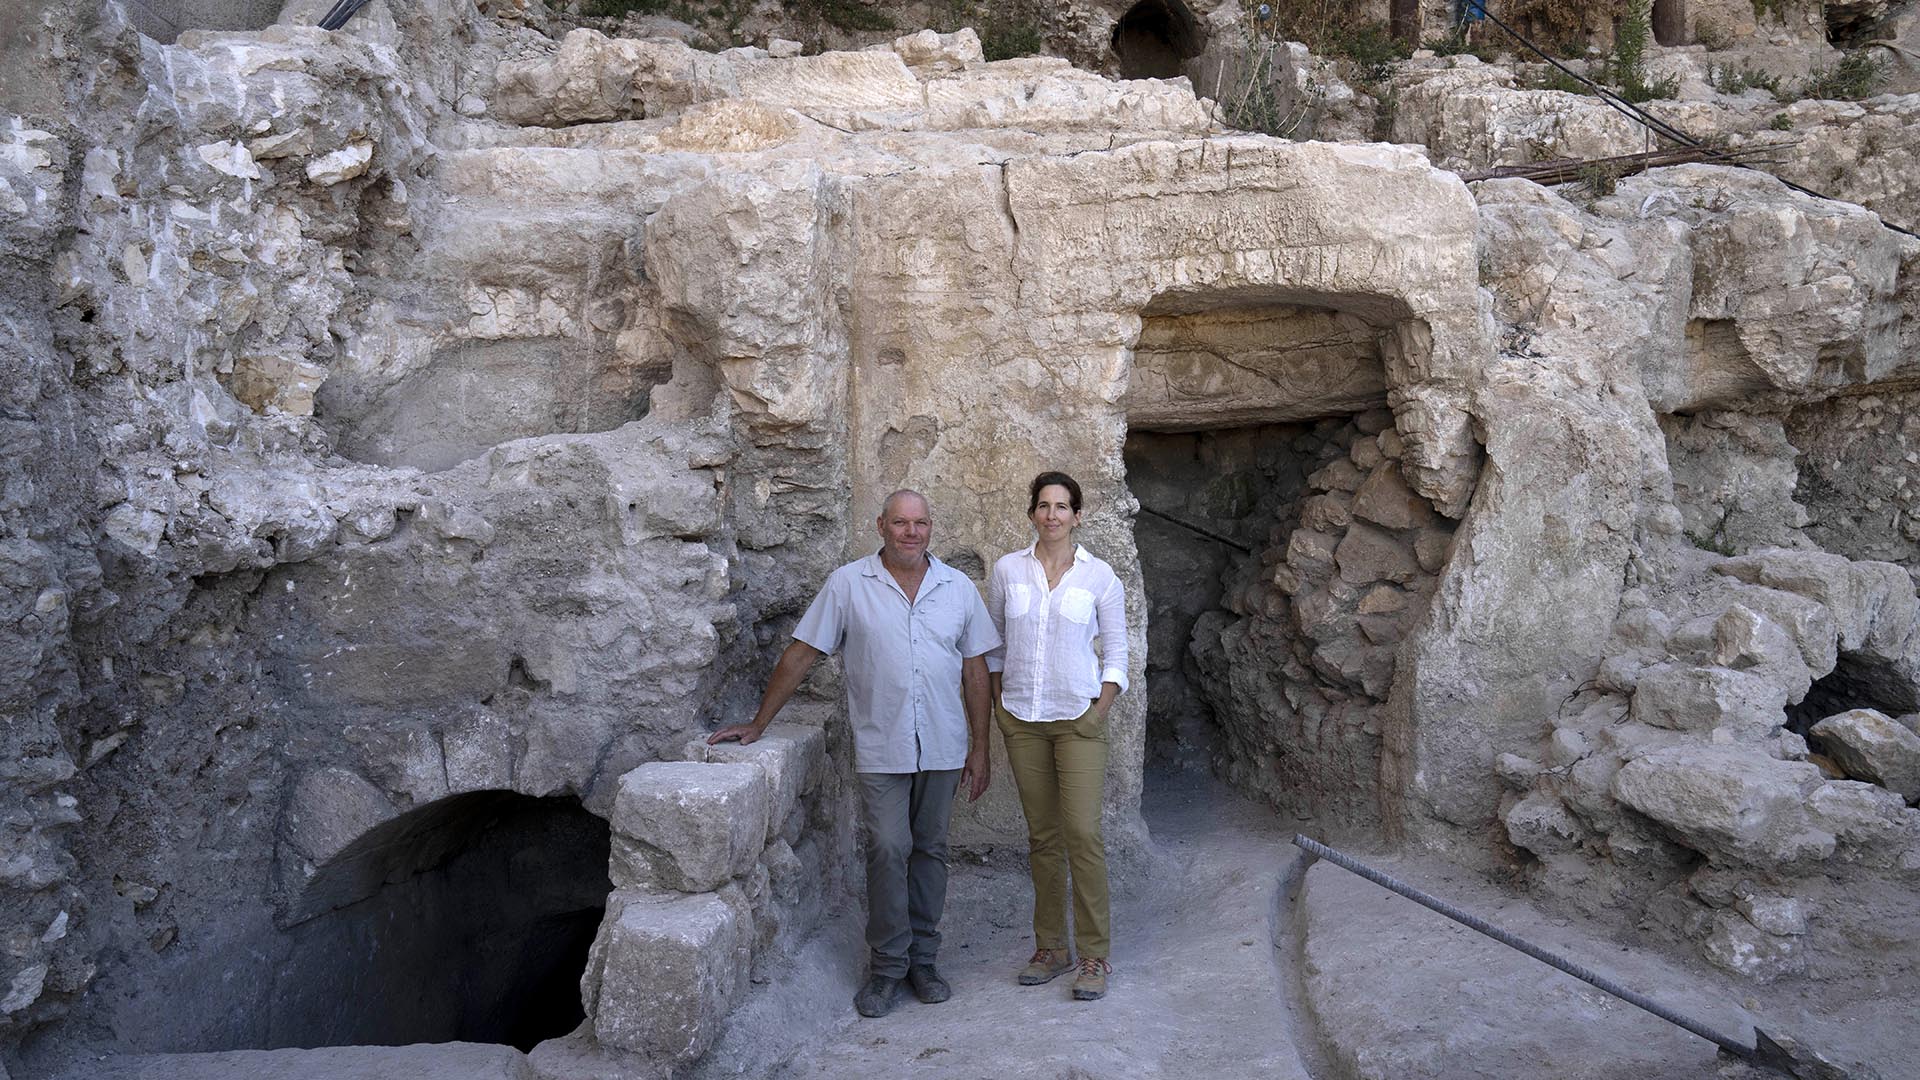 Los arqueólogos de la Universidad Hebrea, el Dr. Oren Gutfeld, a la izquierda, y Michal Haber, posan para un retrato en el sitio de un baño ritual judío o mikve. (Foto AP/Maya Alleruzzo)

